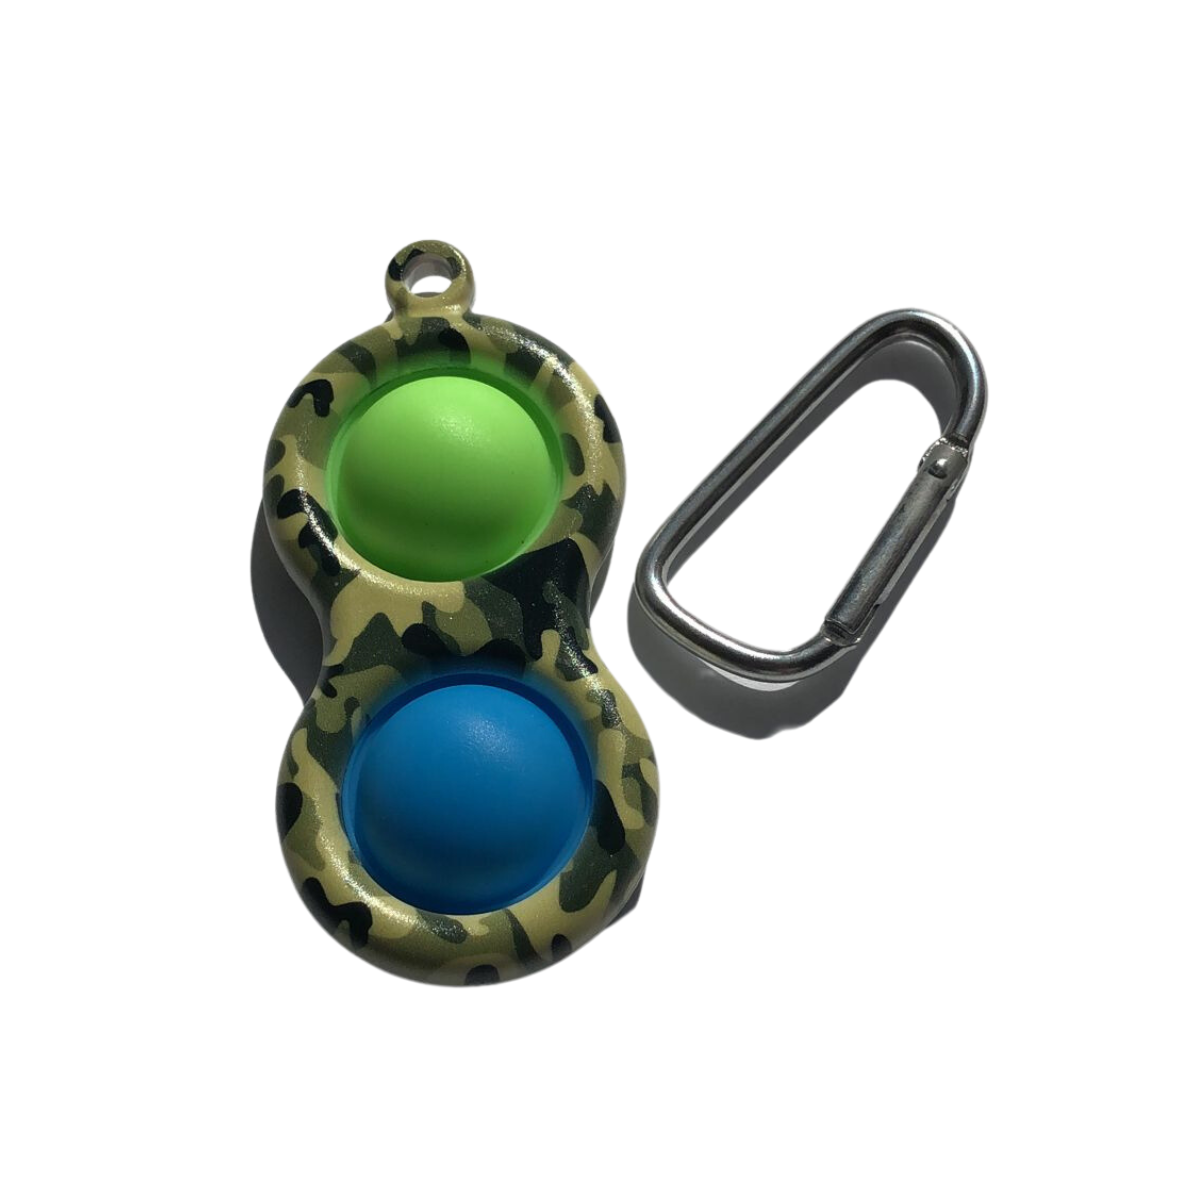 Keychain Bubble Popper Fidget green and blue zebra 